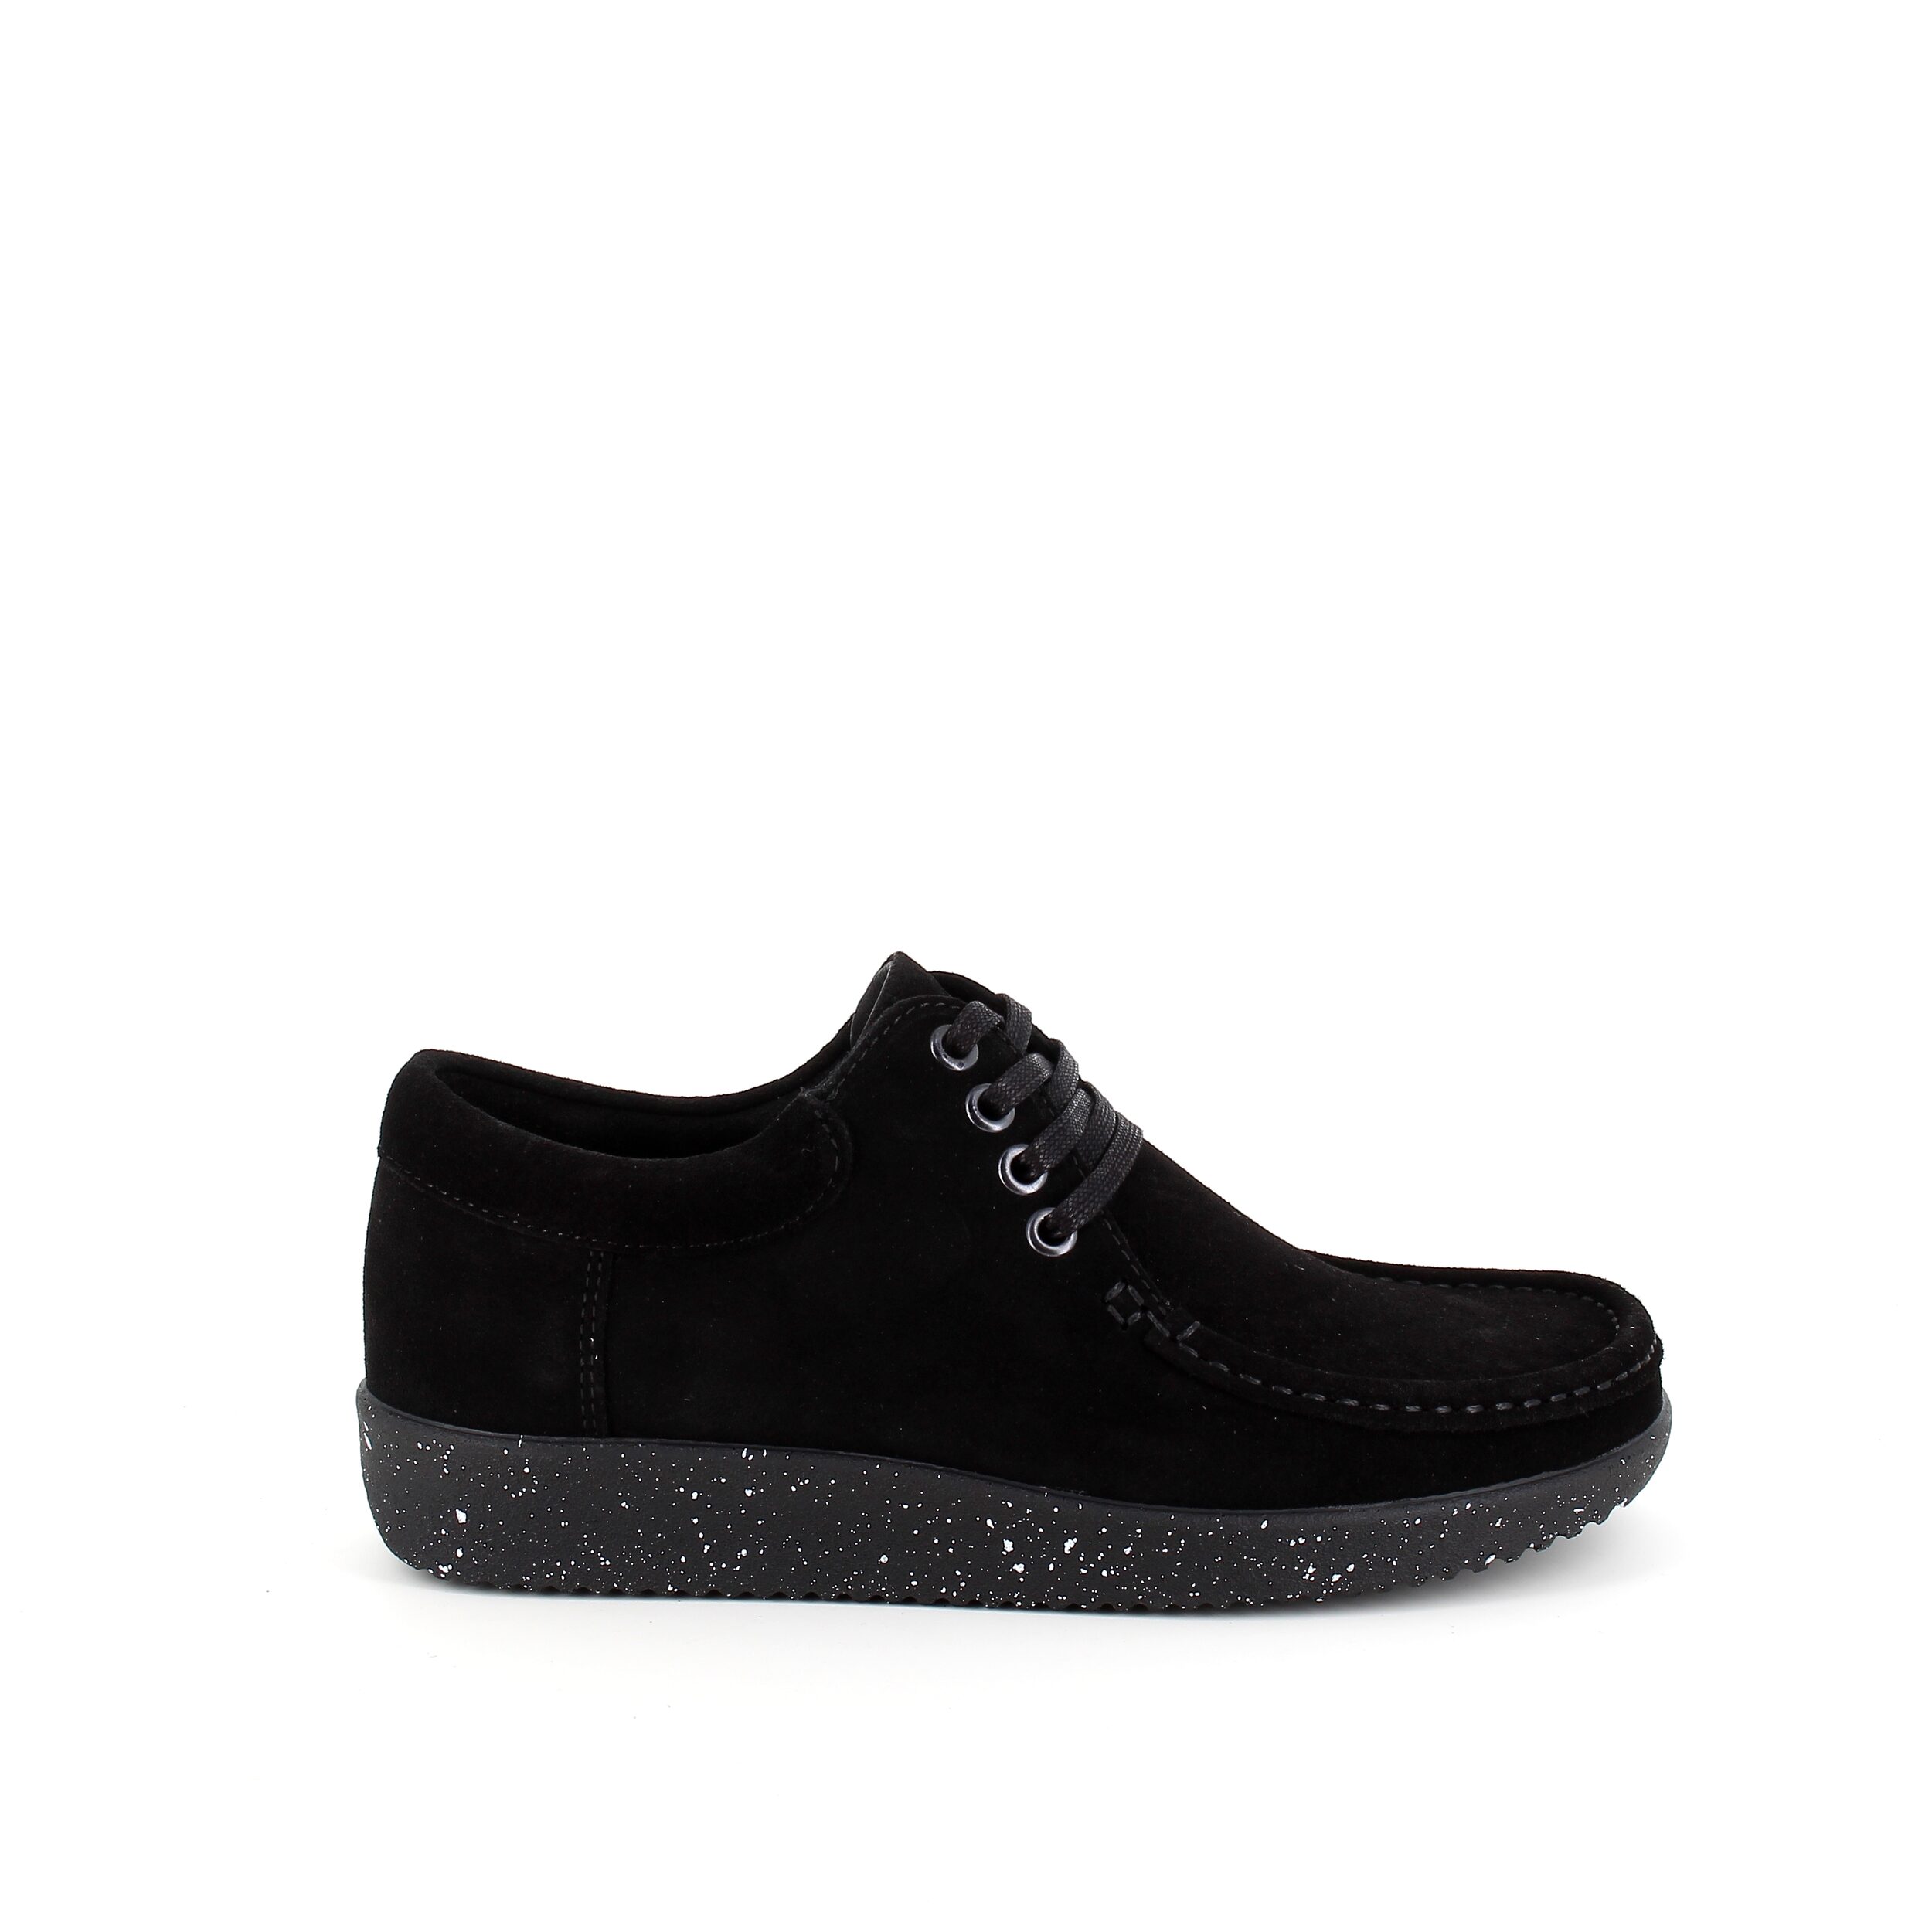 Se Nature sko i sort ruskind med hvide nister i sålen - 41 hos Sygeplejebutikken.dk